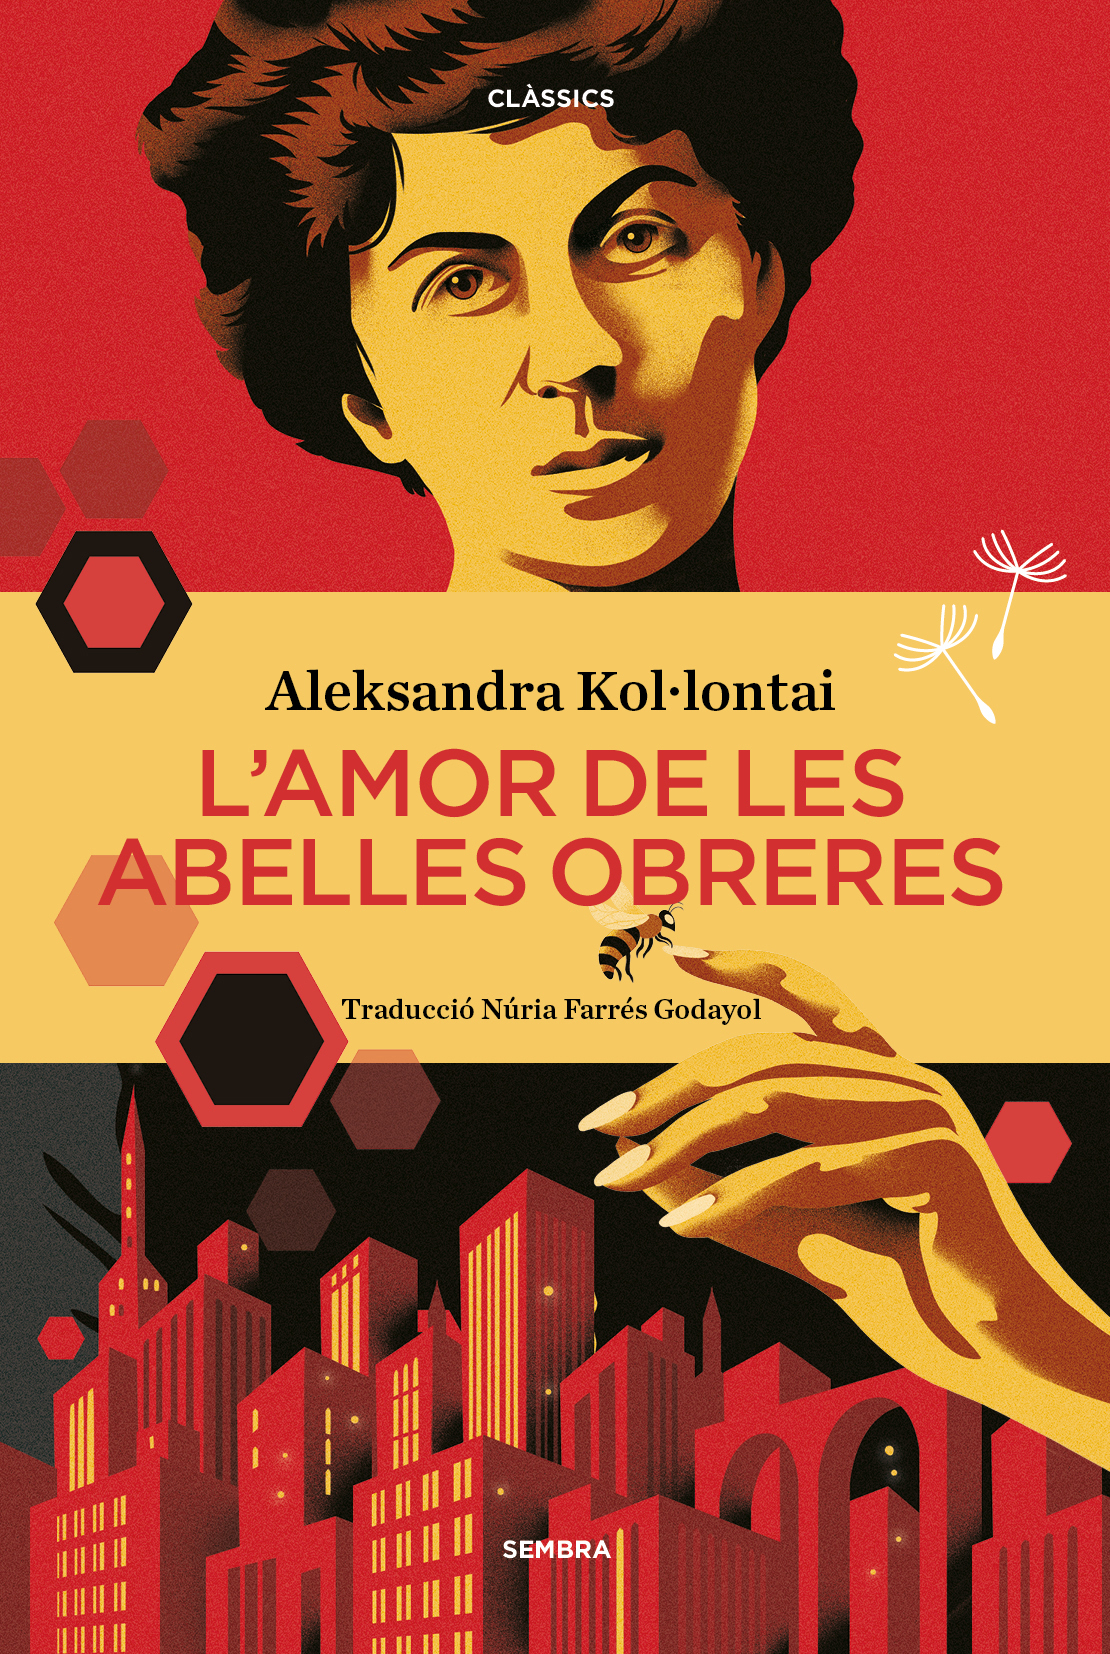 Aleksandra Kol·lontai: L'amor de les abelles obreres (Sembra Llibres)